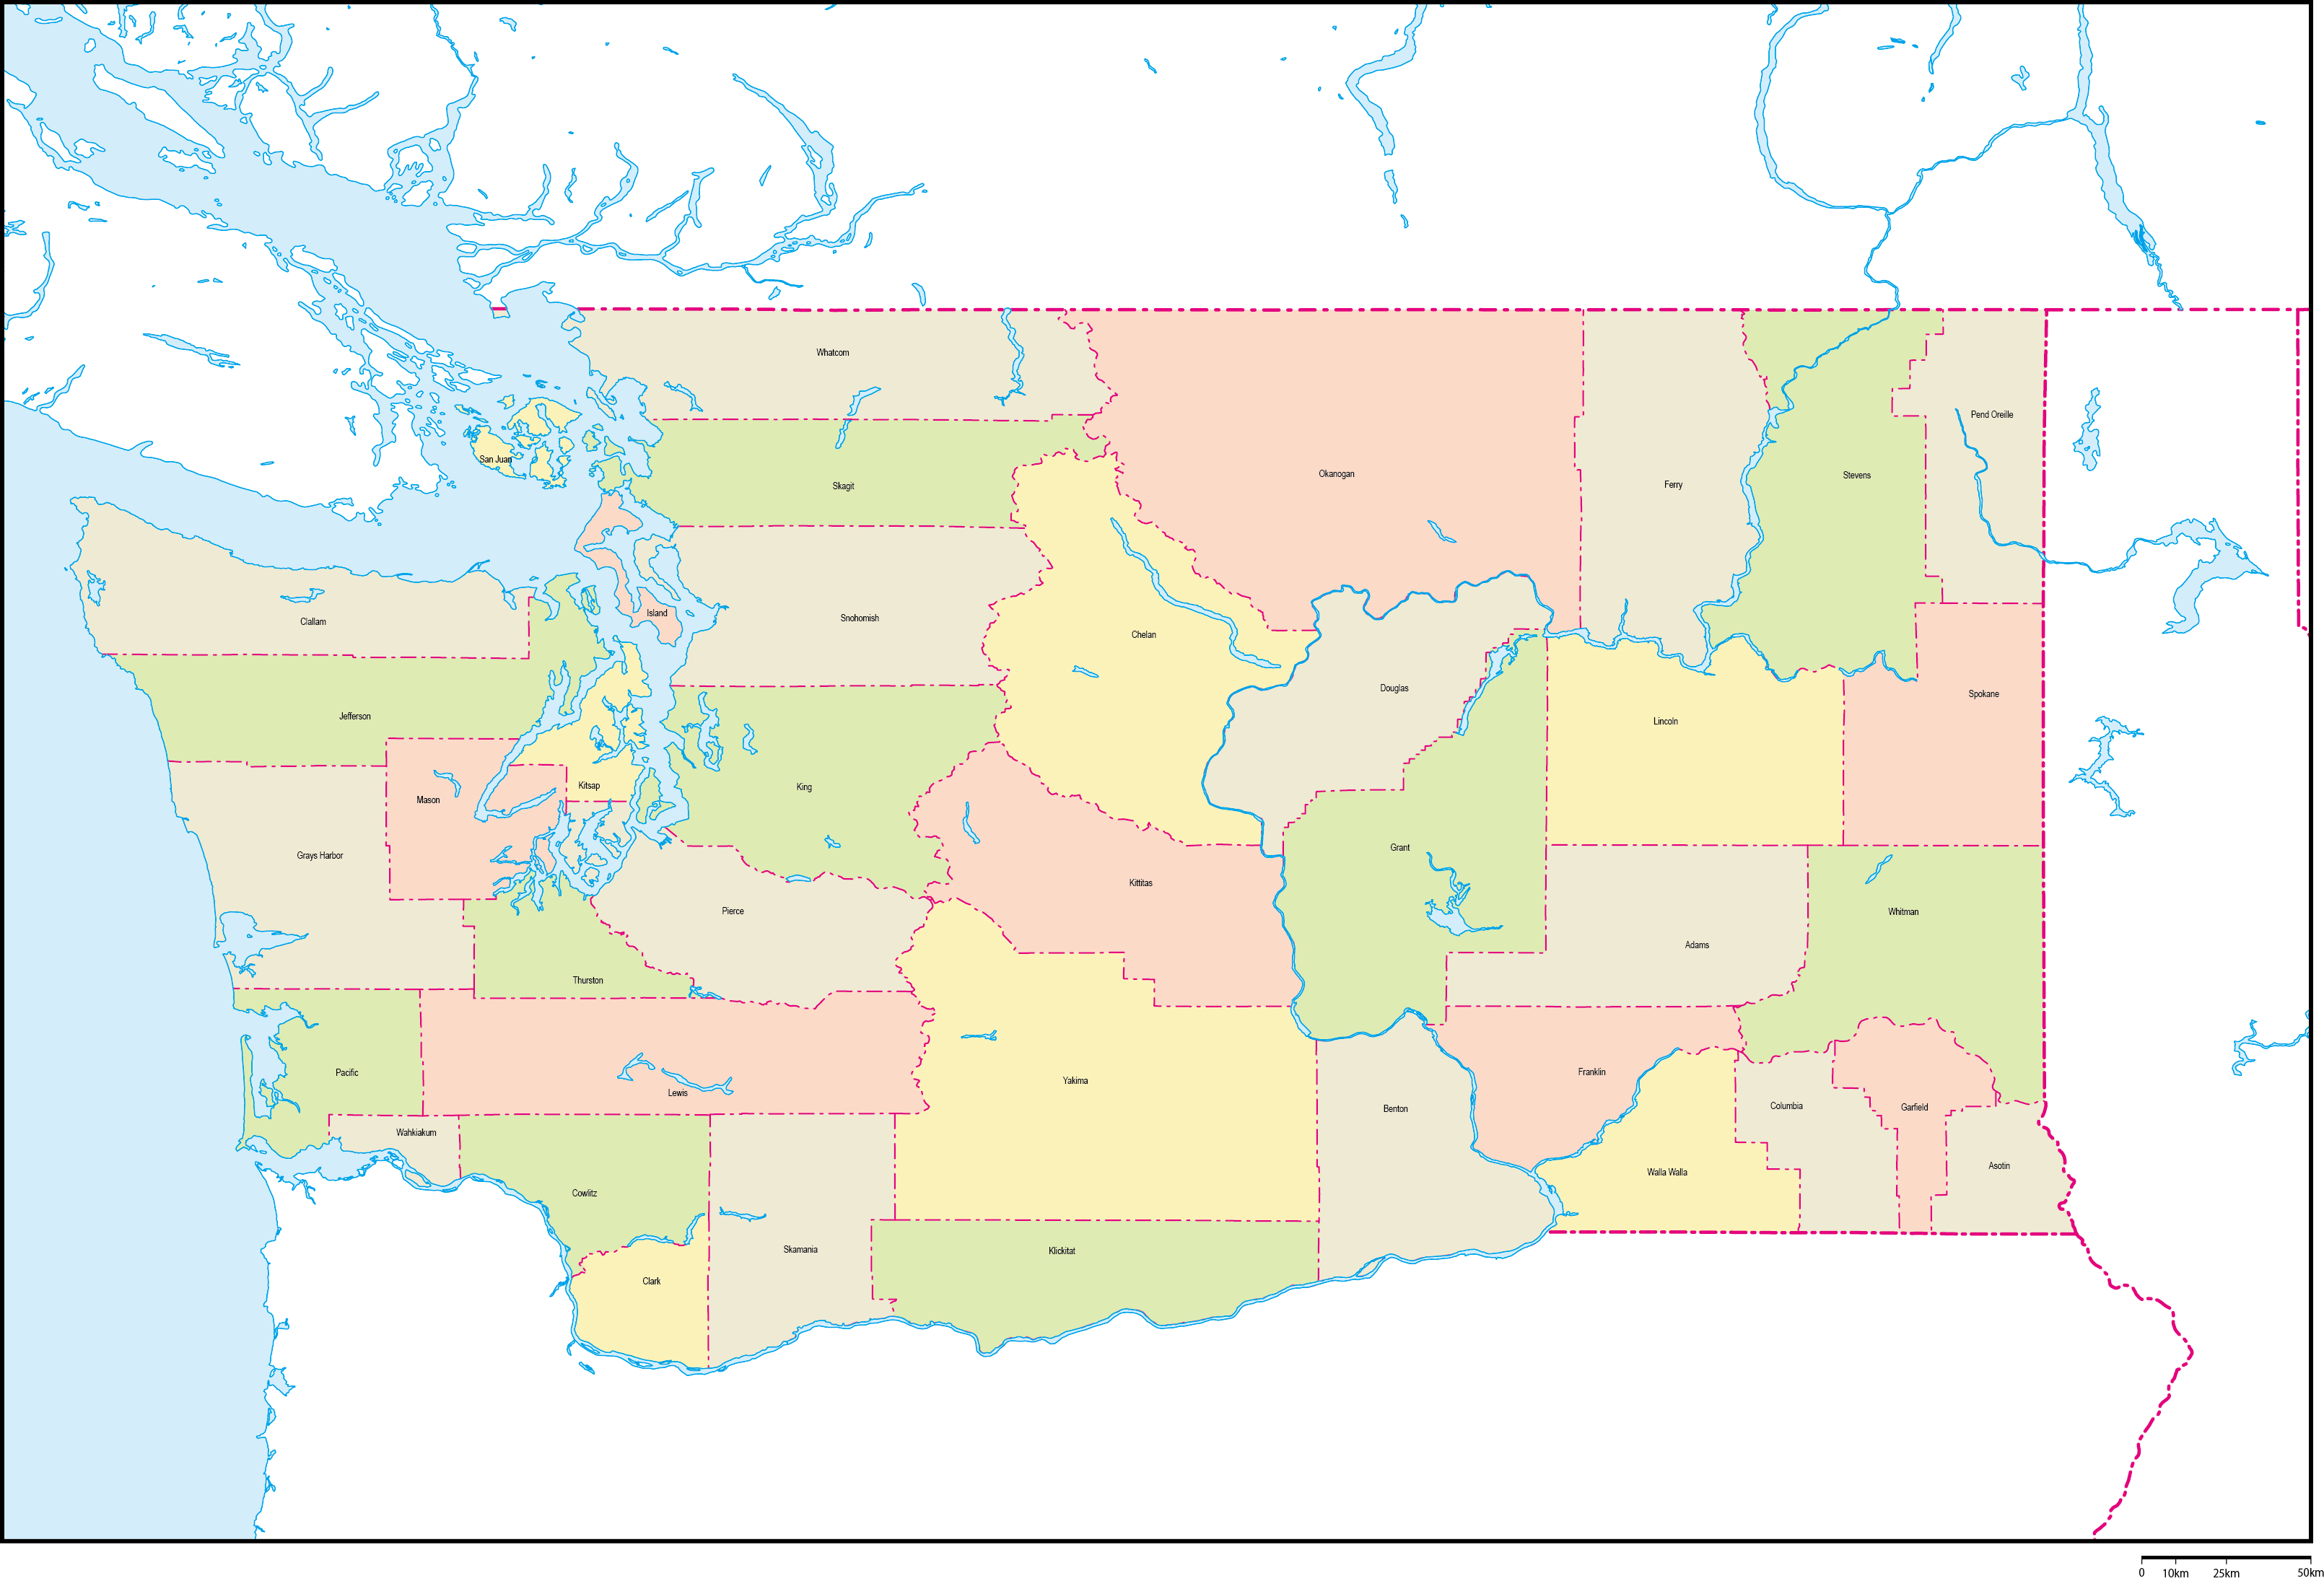 ワシントン州郡色分け地図郡名あり(英語)フリーデータの画像